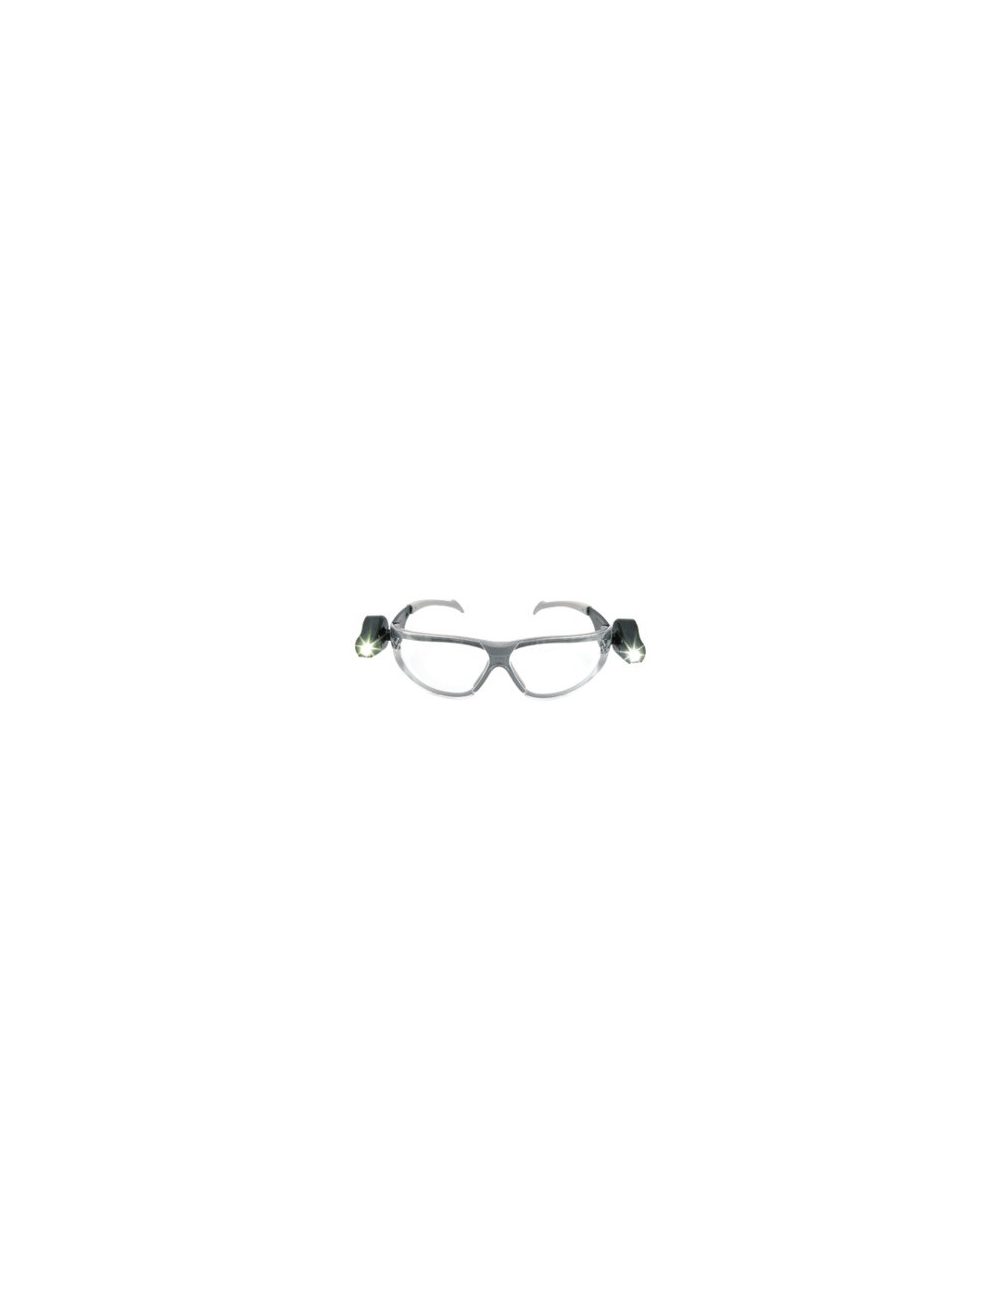 lunettes Led anti-rayure 3m 113560